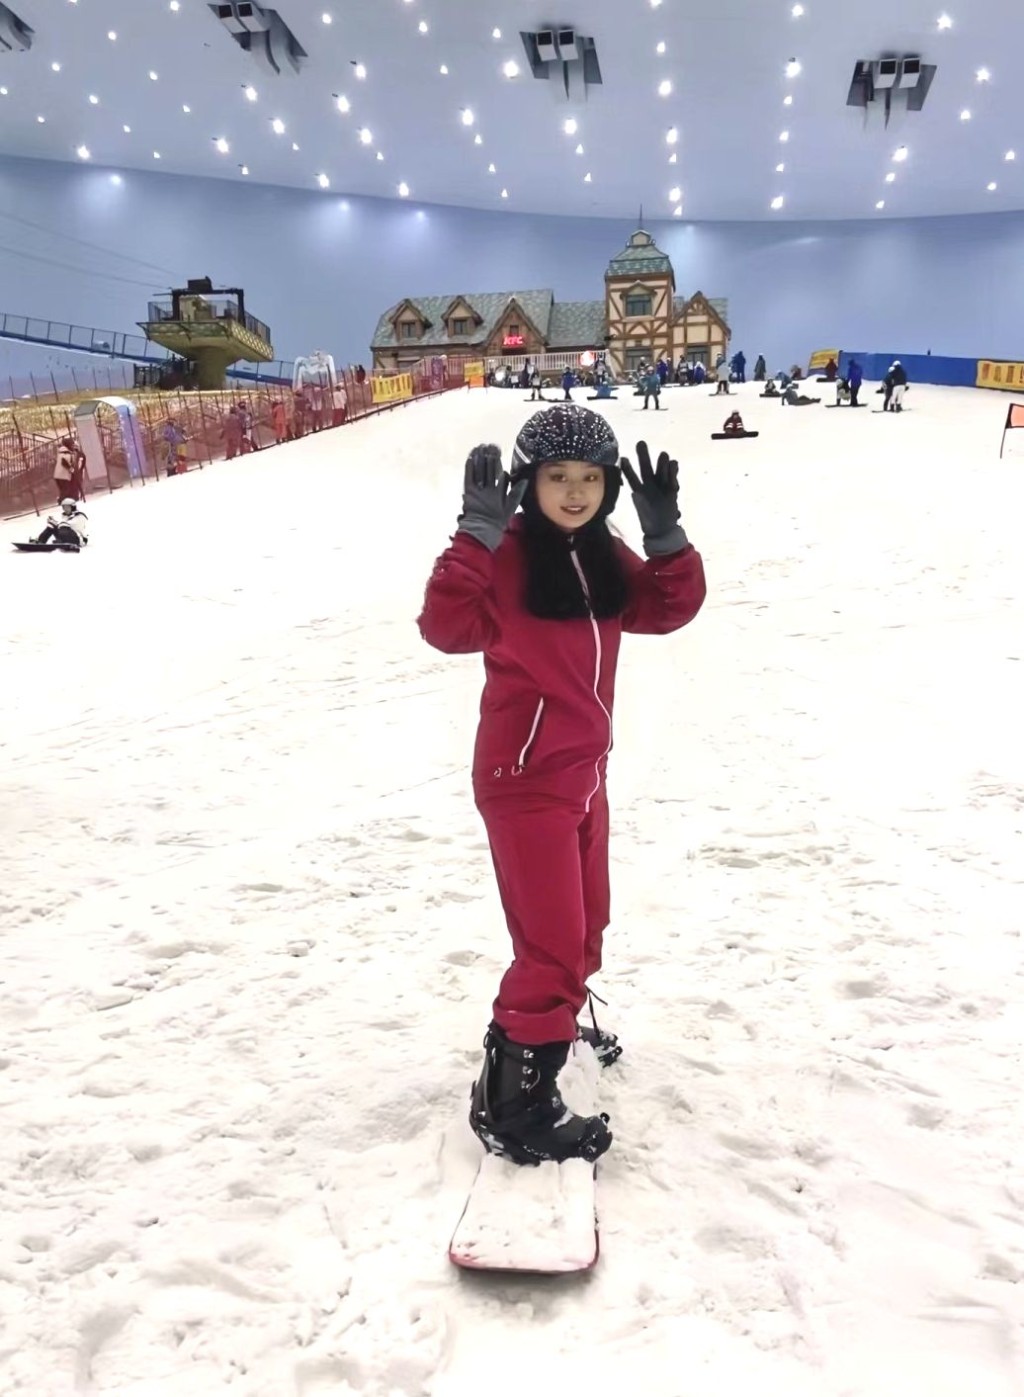 廣州融創樂園熱雪奇迹，雪道適合不同程度的滑雪人士。